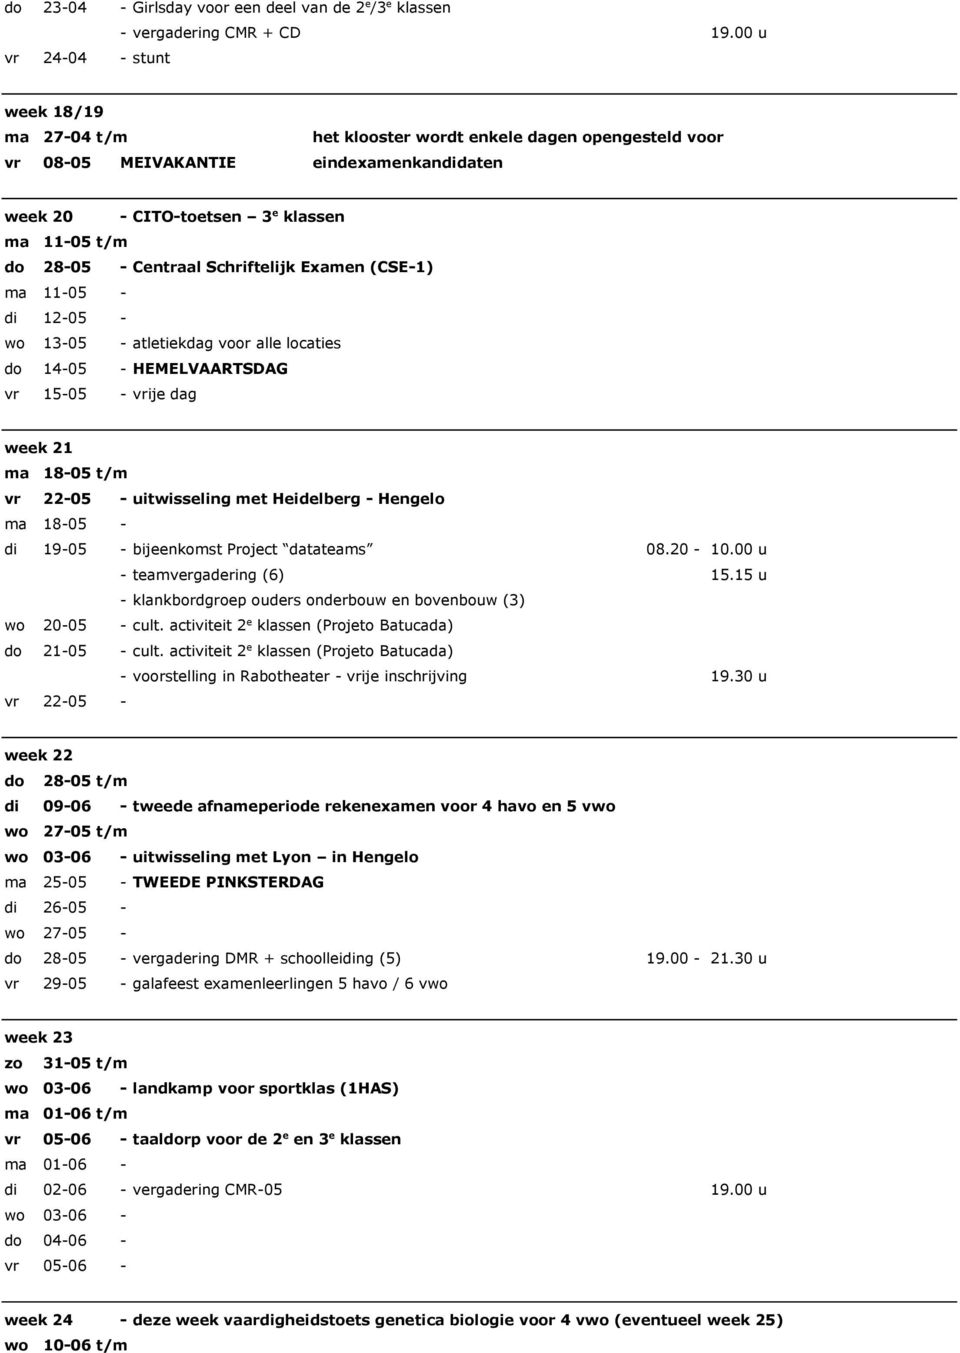 Schriftelijk Examen (CSE-1) ma 11-05 - di 12-05 - wo 13-05 - atletiekdag voor alle locaties do 14-05 - HEMELVAARTSDAG vr 15-05 - vrije dag week 21 ma 18-05 t/m vr 22-05 - uitwisseling met Heidelberg